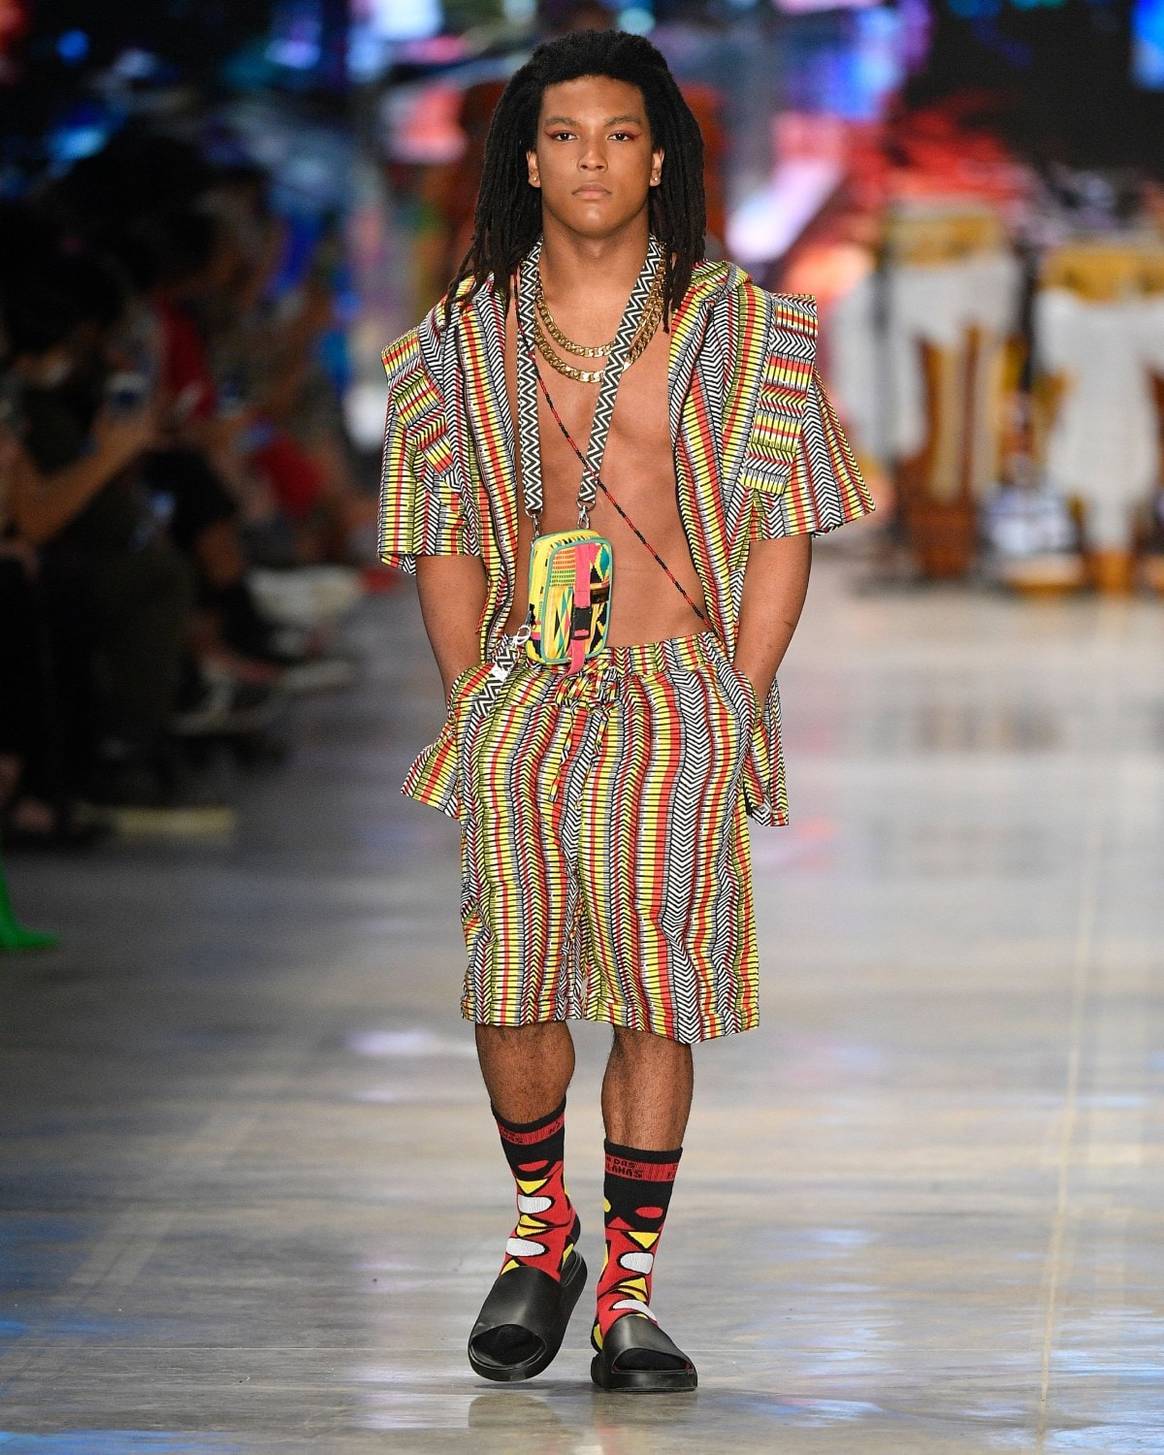 São Paulo Fashion Week: Mode als Instrument für soziale Integration und Vielfalt